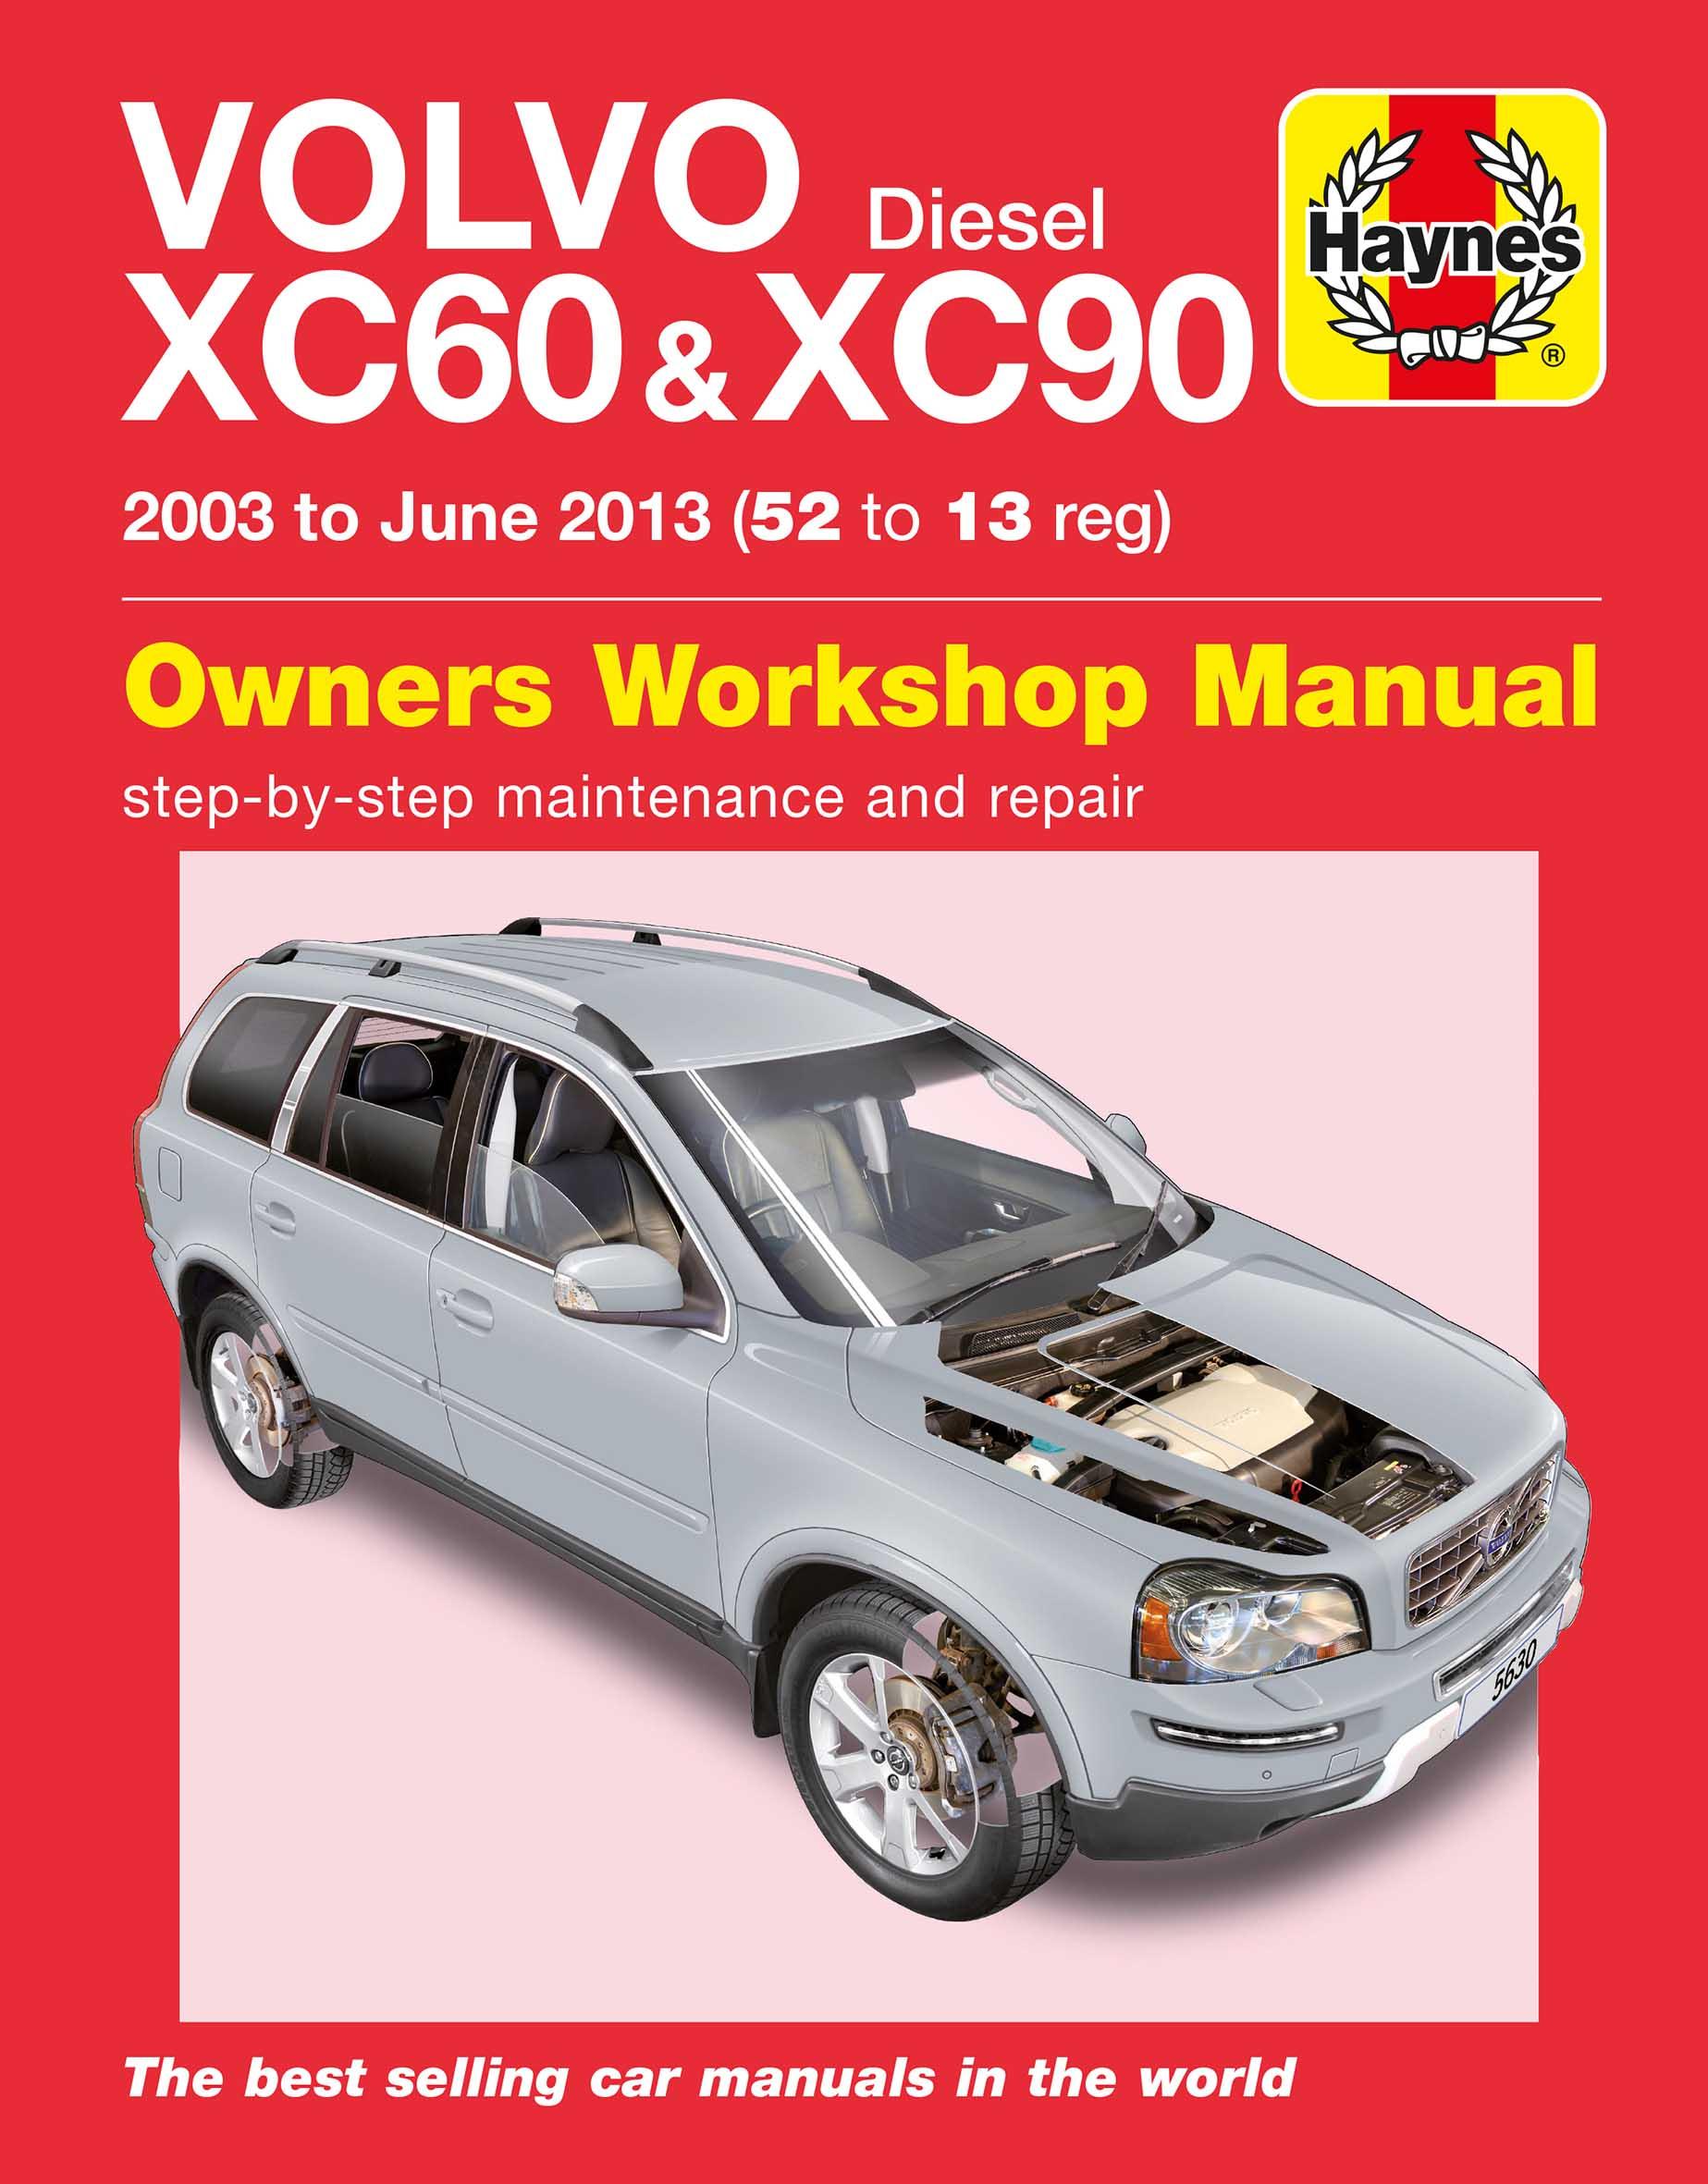 Haynes Volvo Xc60 & Xc90 Diesel (03-13) Manual